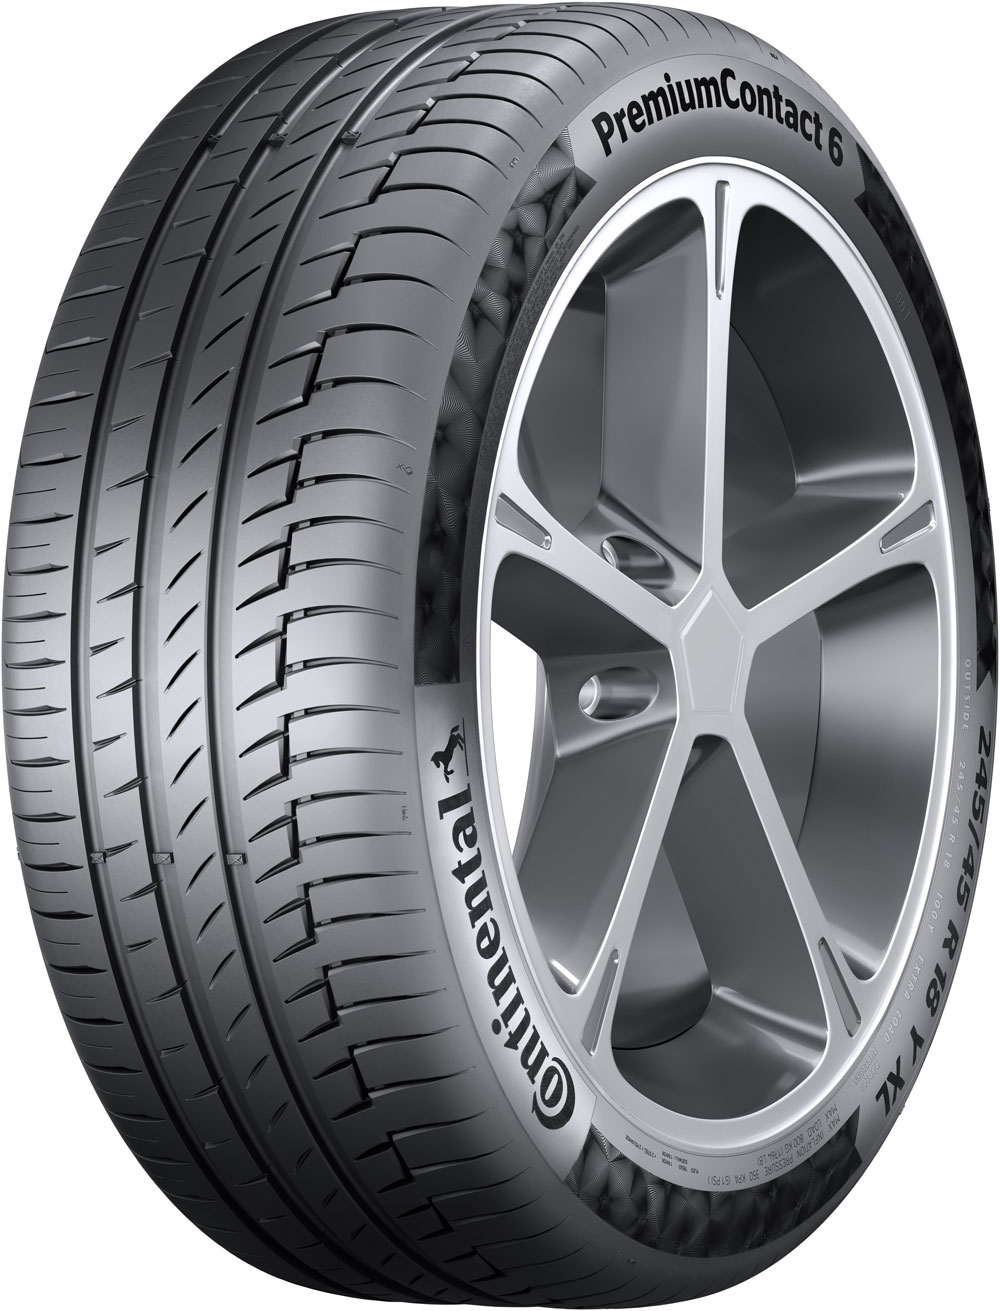 Автомобилни гуми CONTINENTAL PREMIUM 6 MO XL MERCEDES FP 255/40 R18 99Y